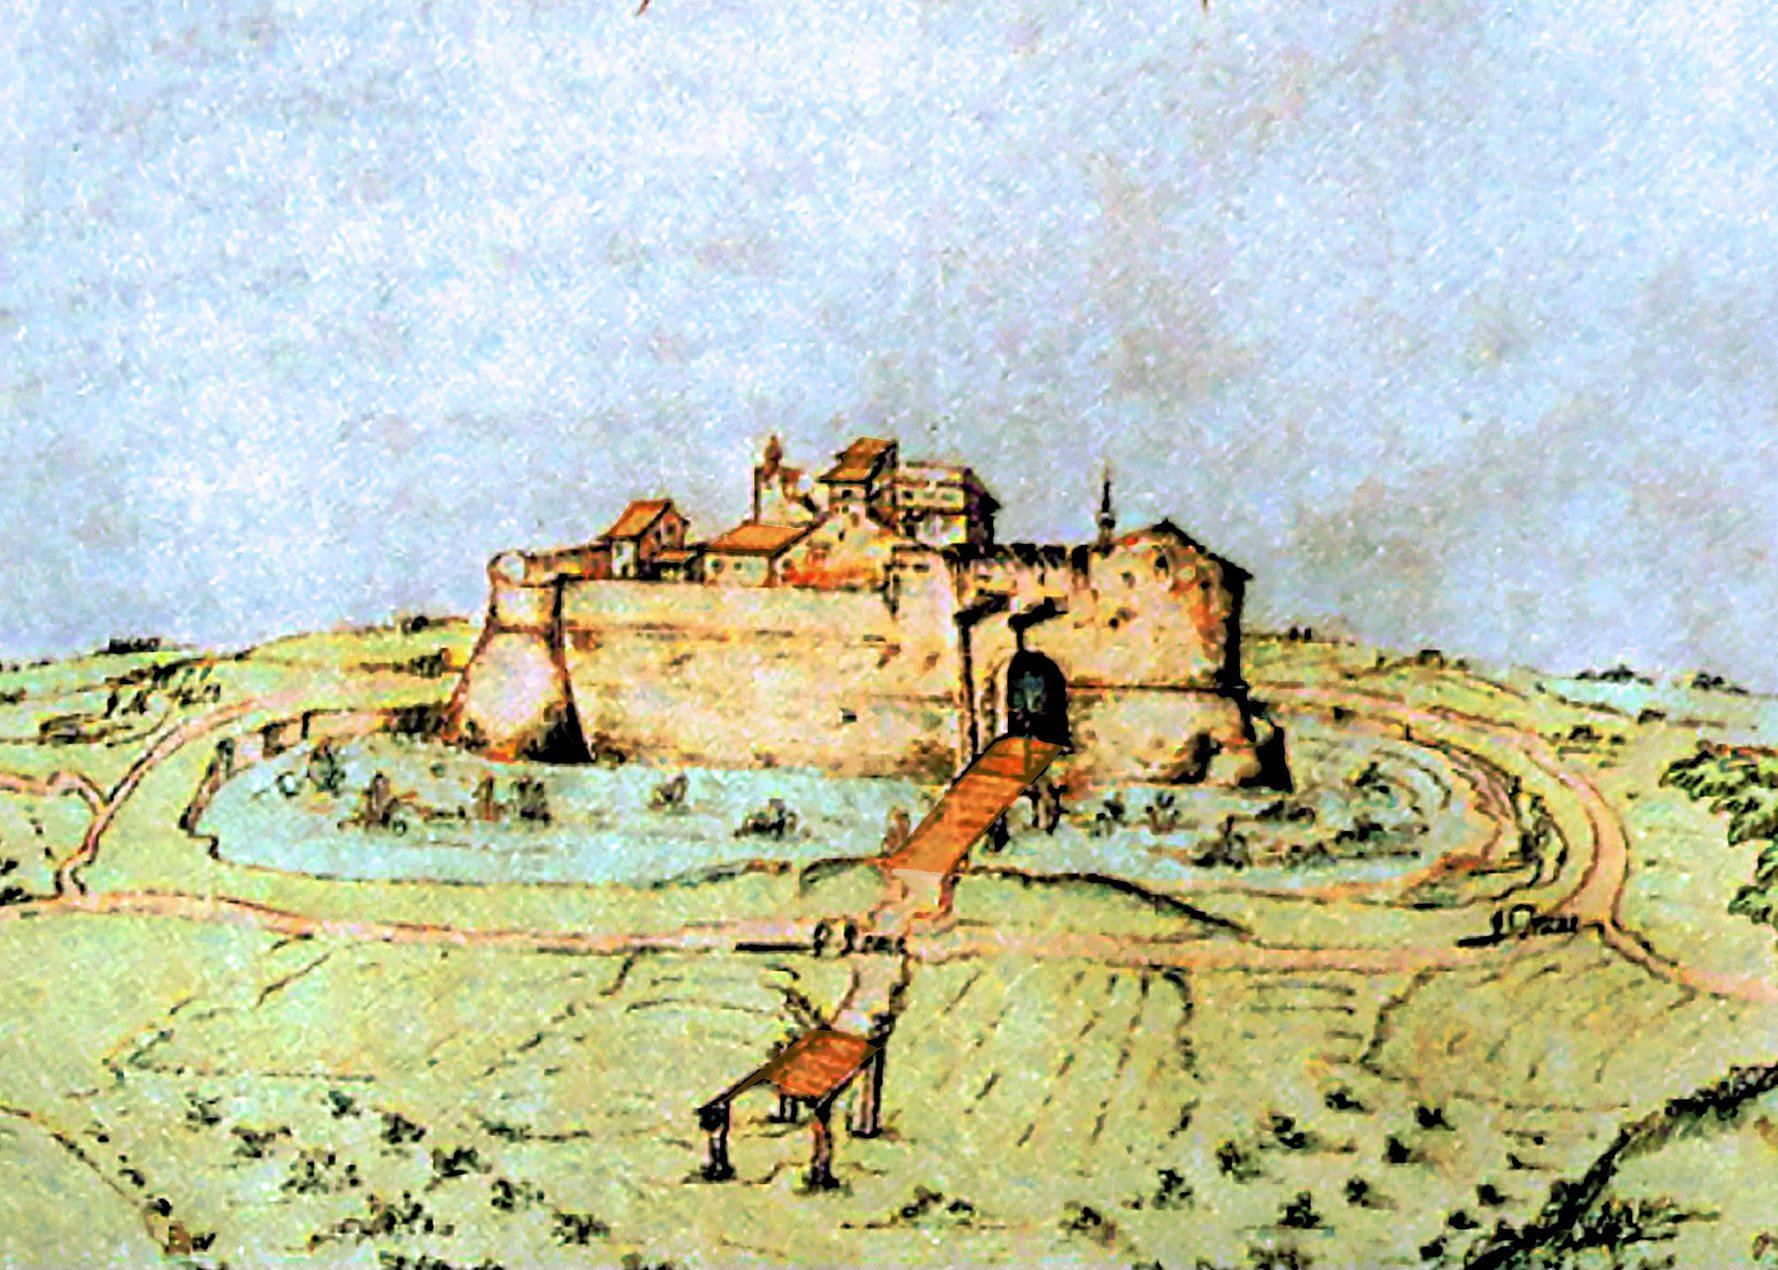 Veduta del Castello di Fratta, Cipriano Piccolpasso (1575 ca.), elaborata per quanto riguarda i colori da Stefano Bordoni (per gentile concessione di S.B.)